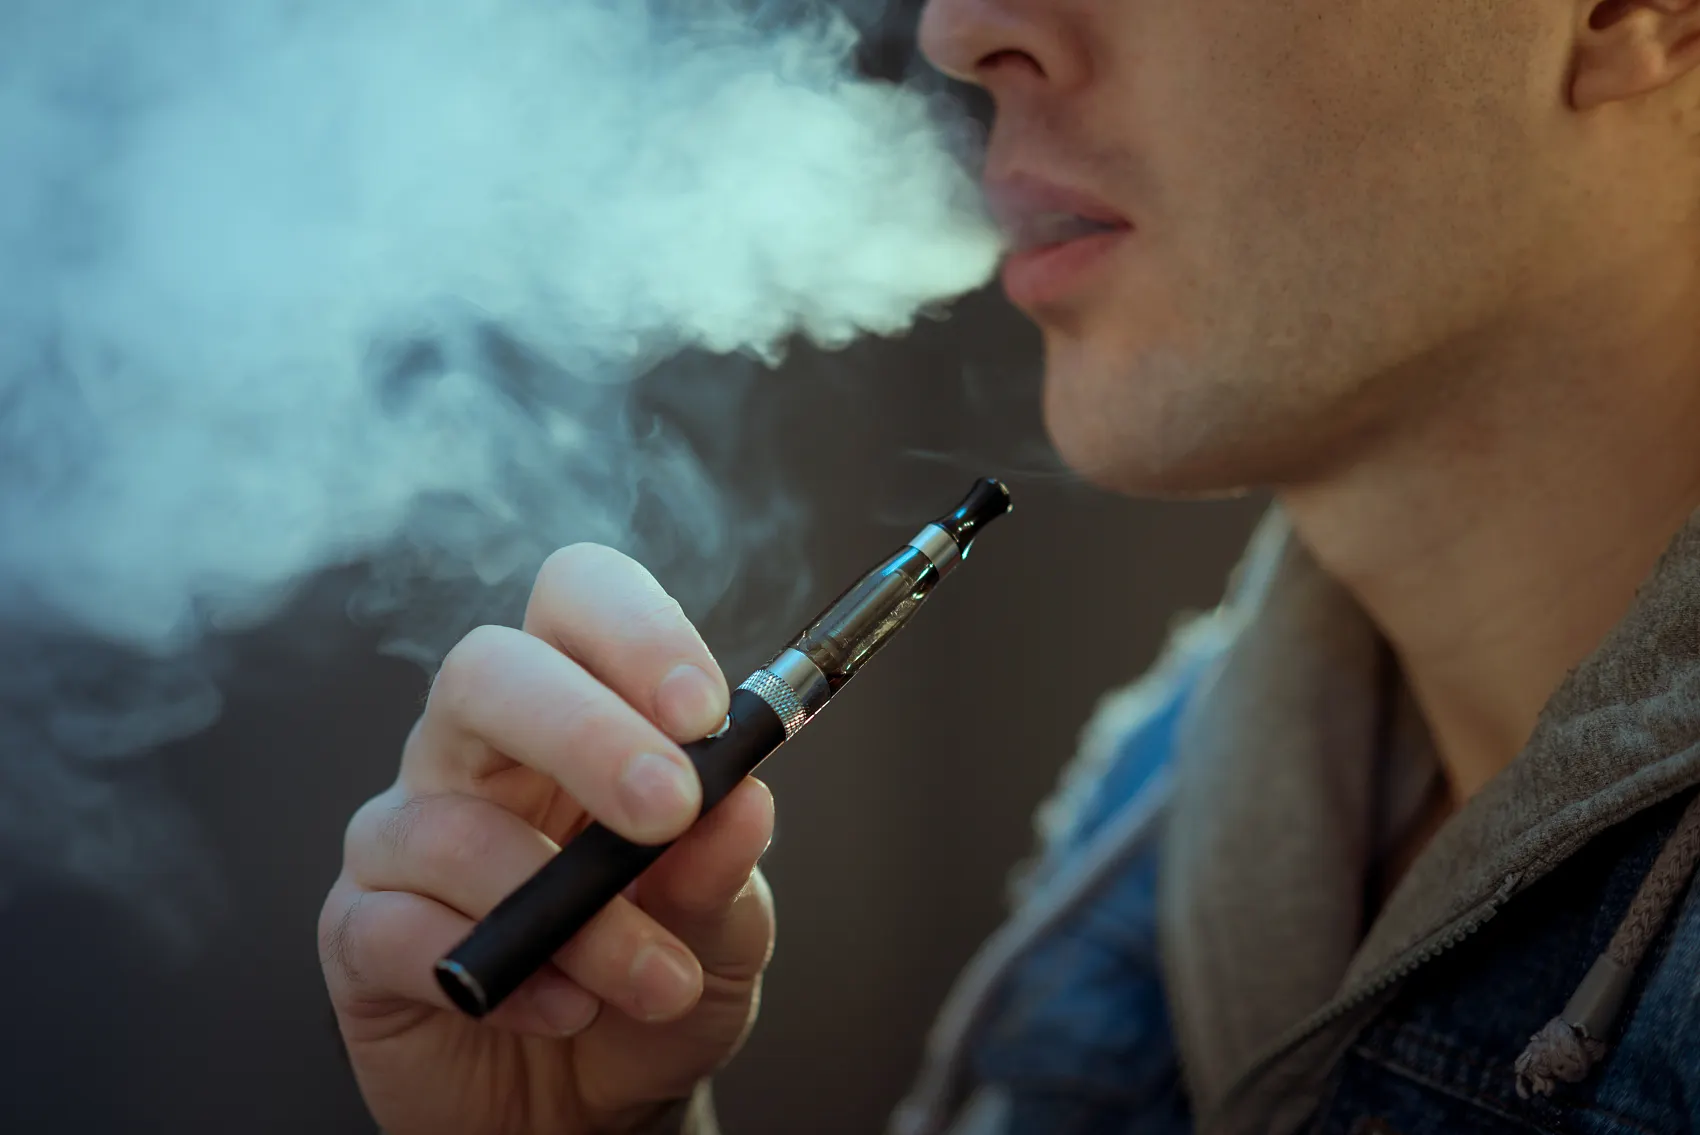 Italian government has a positive attitude towards e-cigarette products